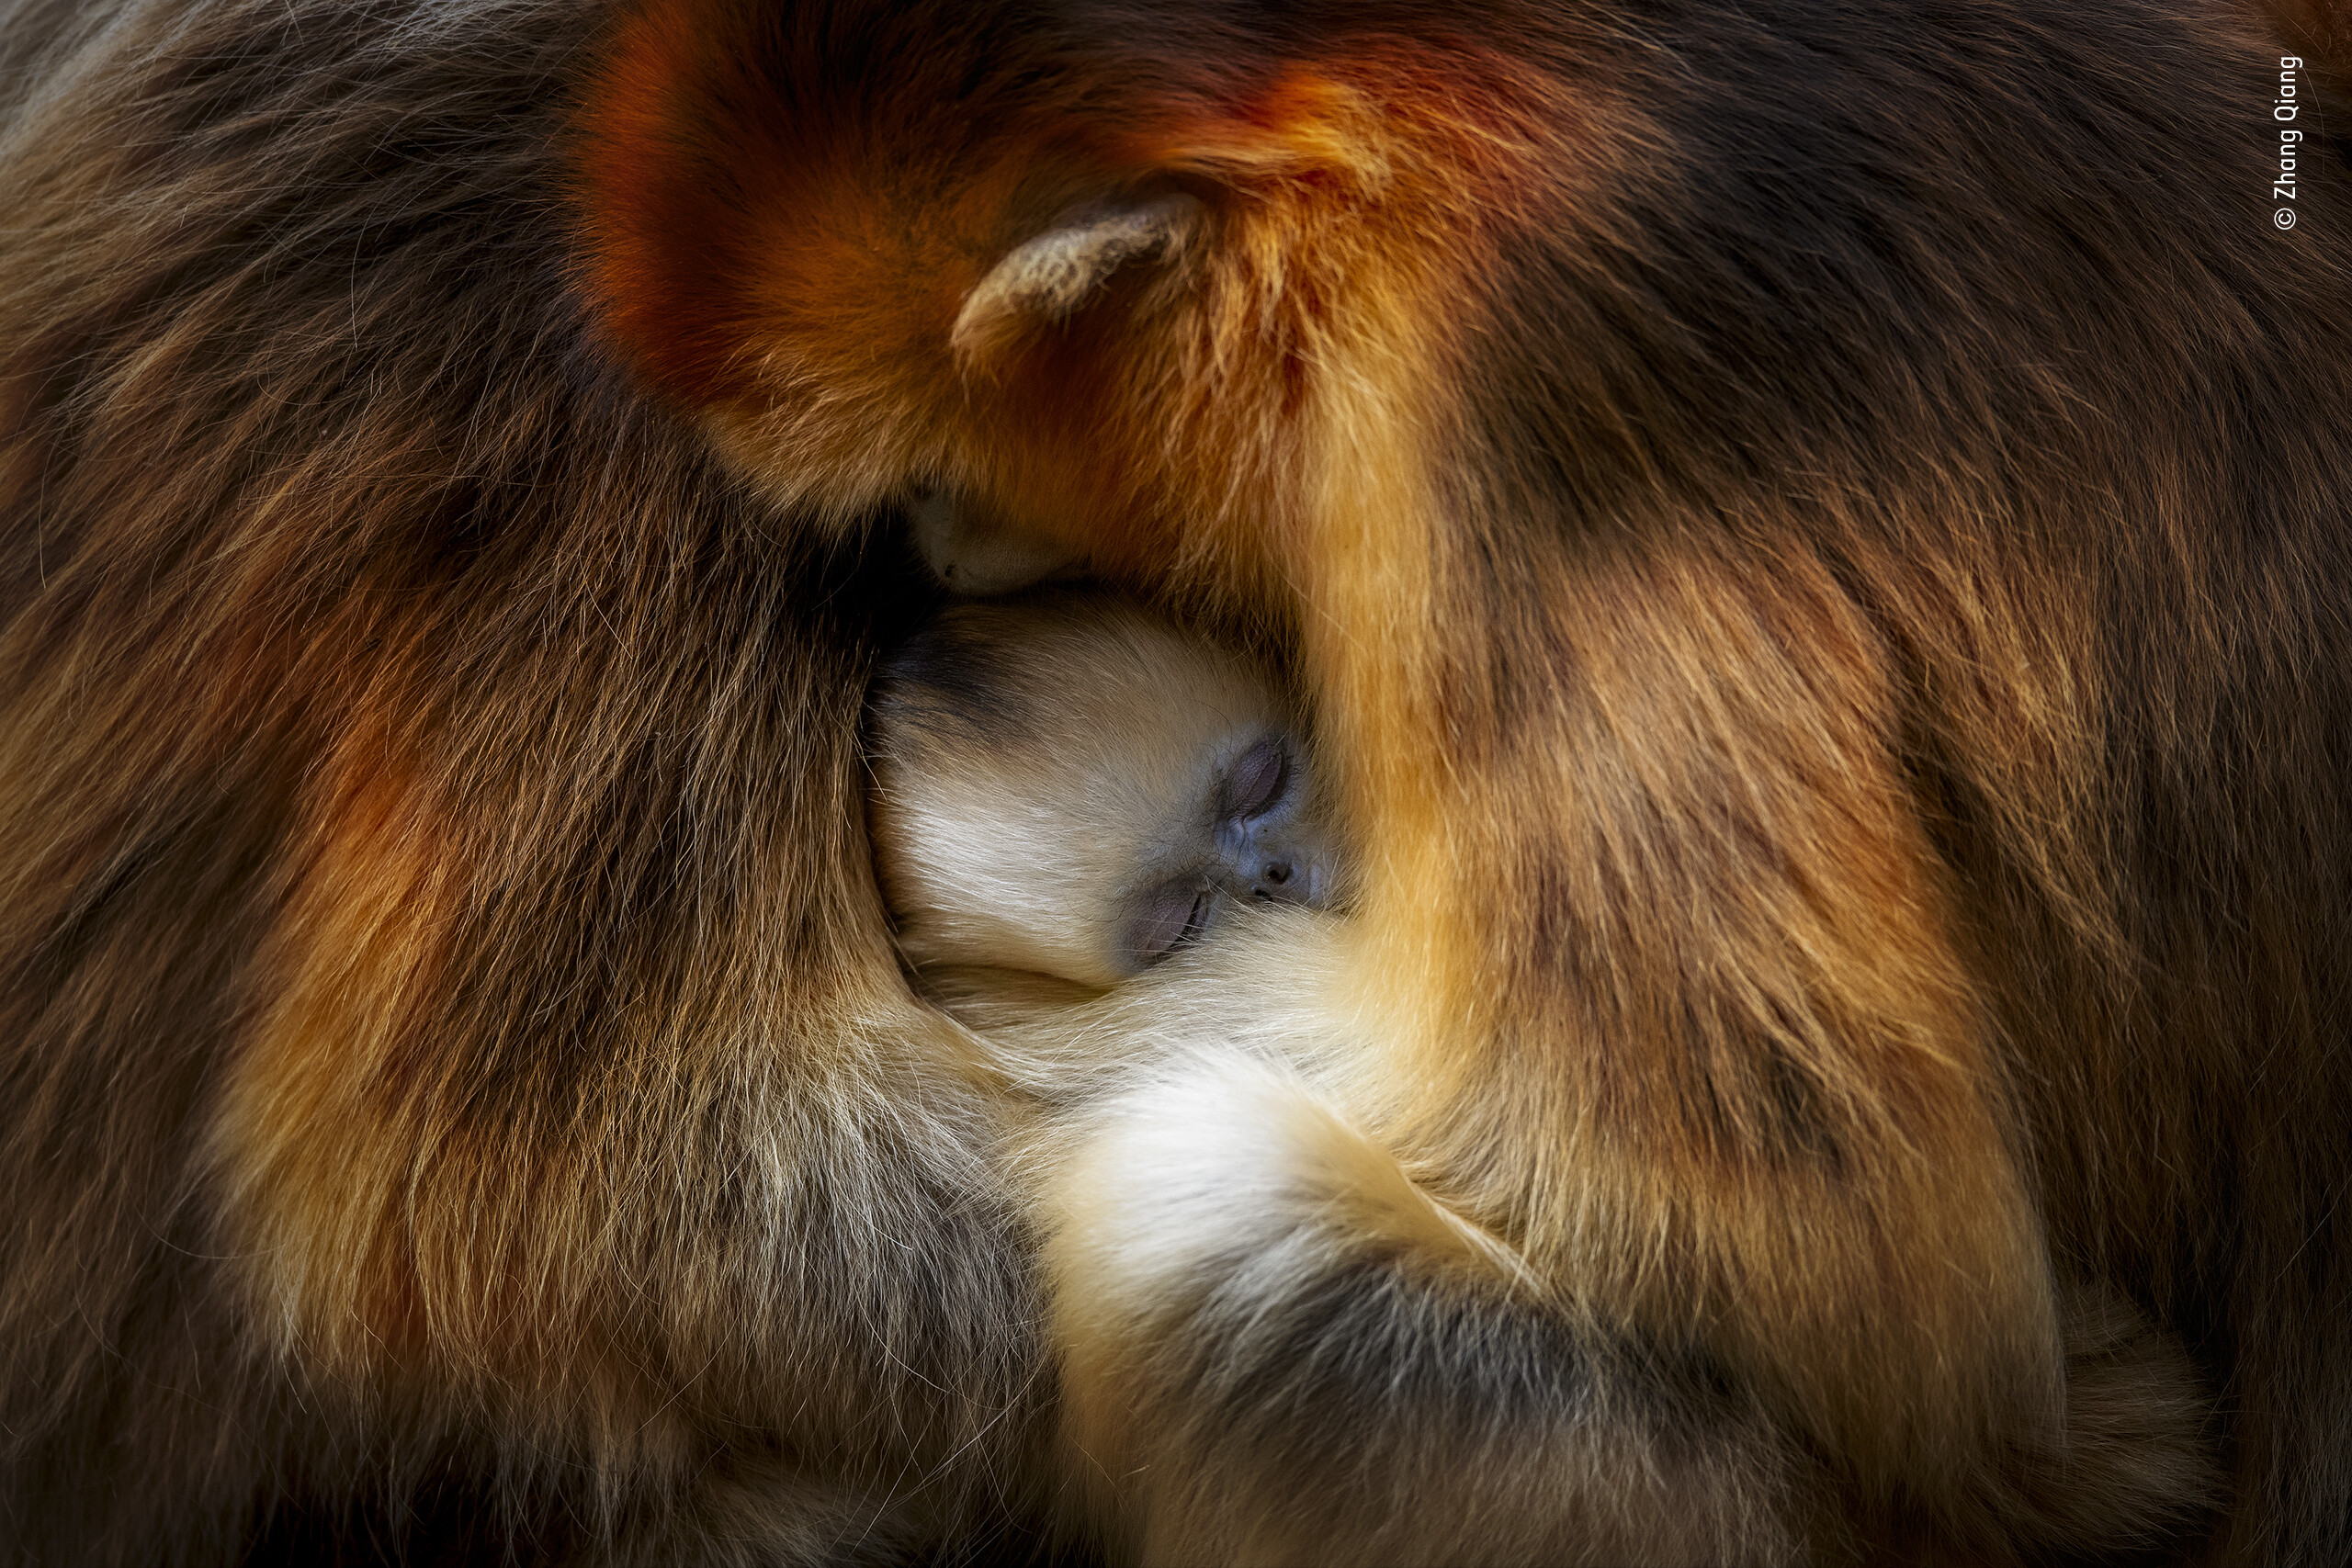 Обезьяньи обнимашки. Сычуаньские курносые обезьяны (рокселланов ринопитек) в горах Циньлин, Китай. Фотограф Чжан Цян. People’s Choice Award, 2021